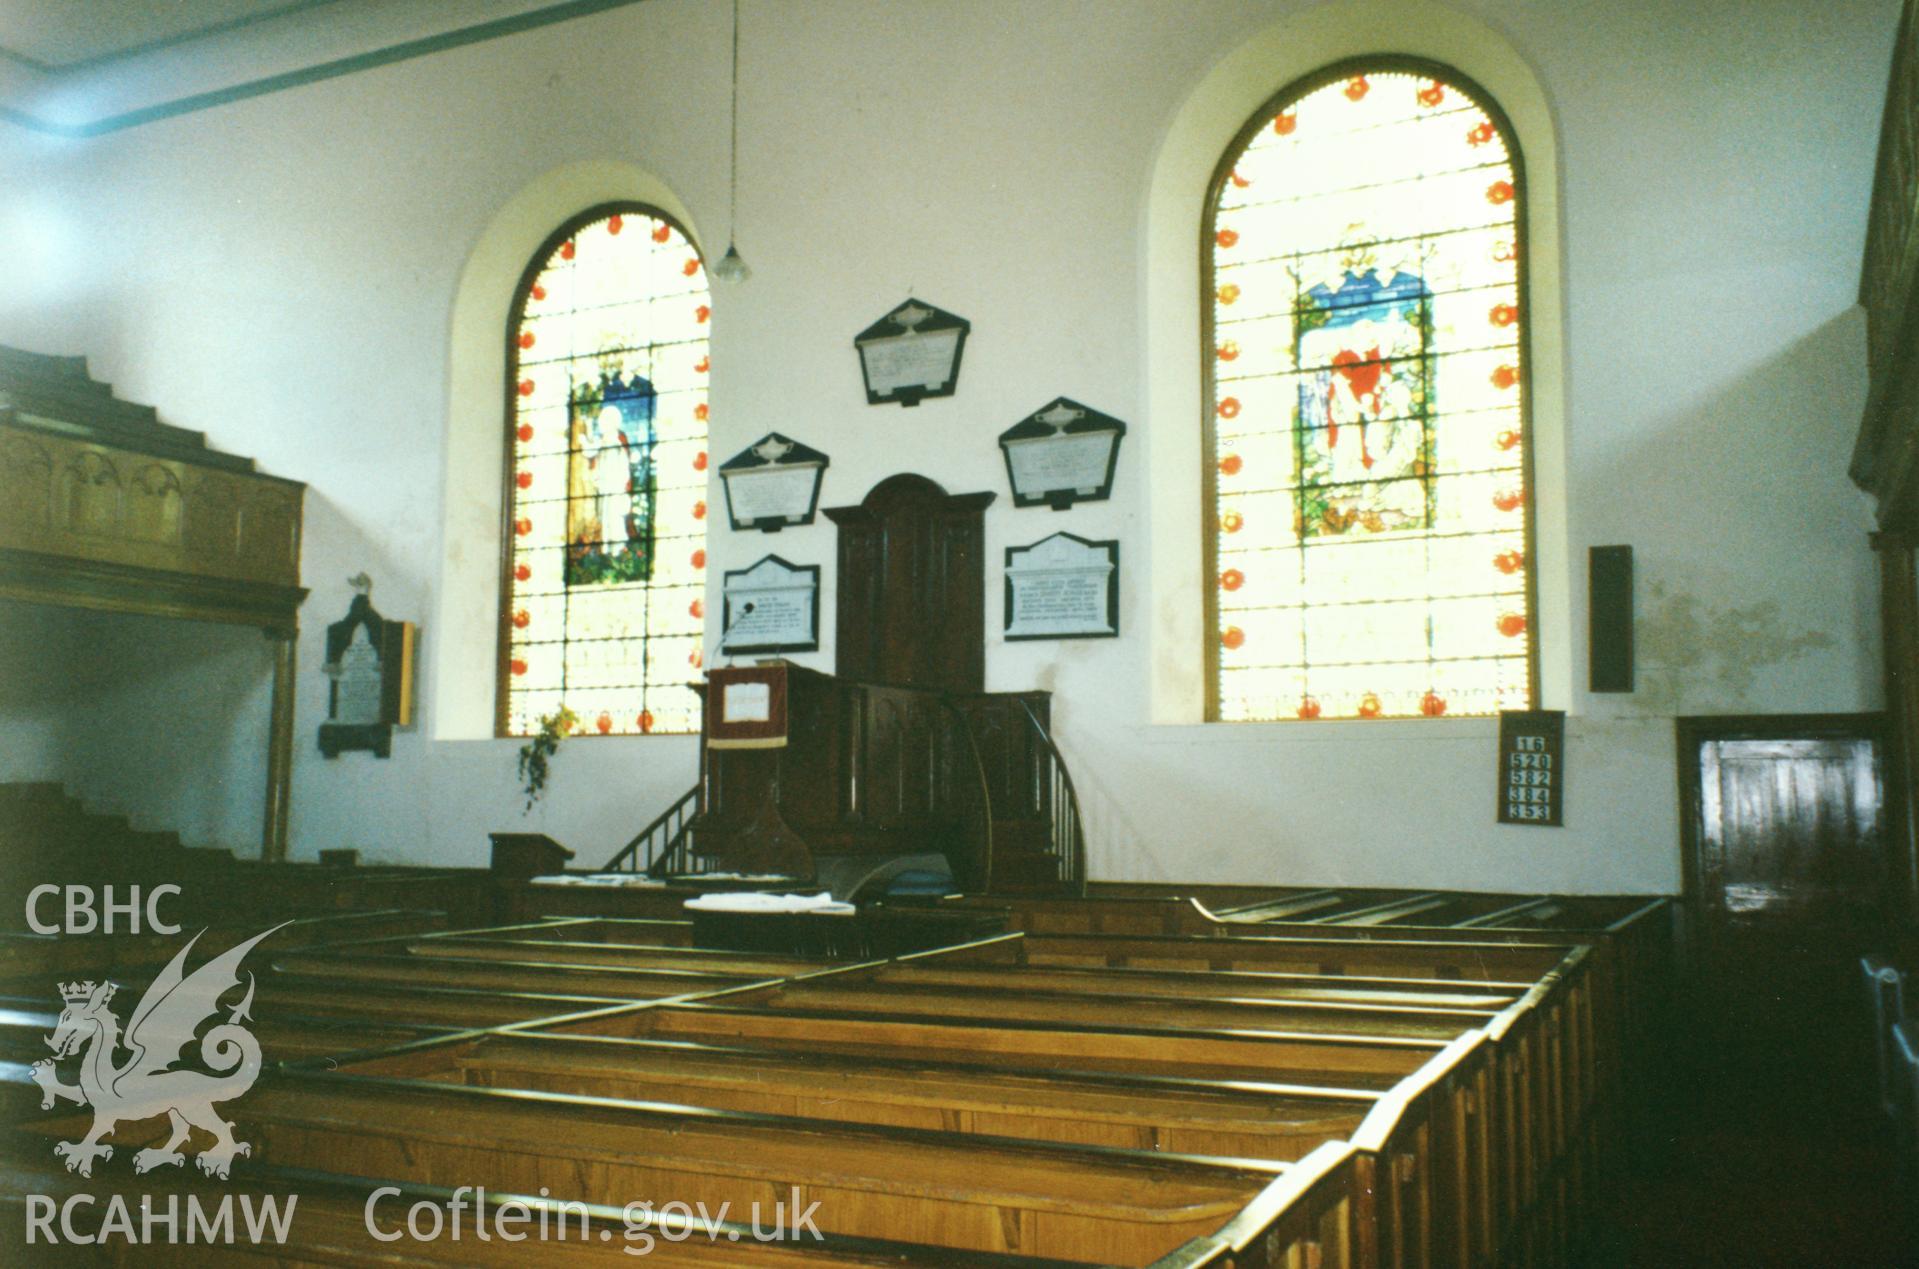 Digital copy of a colour photograph showing an interior view of Heol Awst Welsh Independent Chapel, Lammas Street, Carmarthen, taken by Robert Scourfield, 1996.